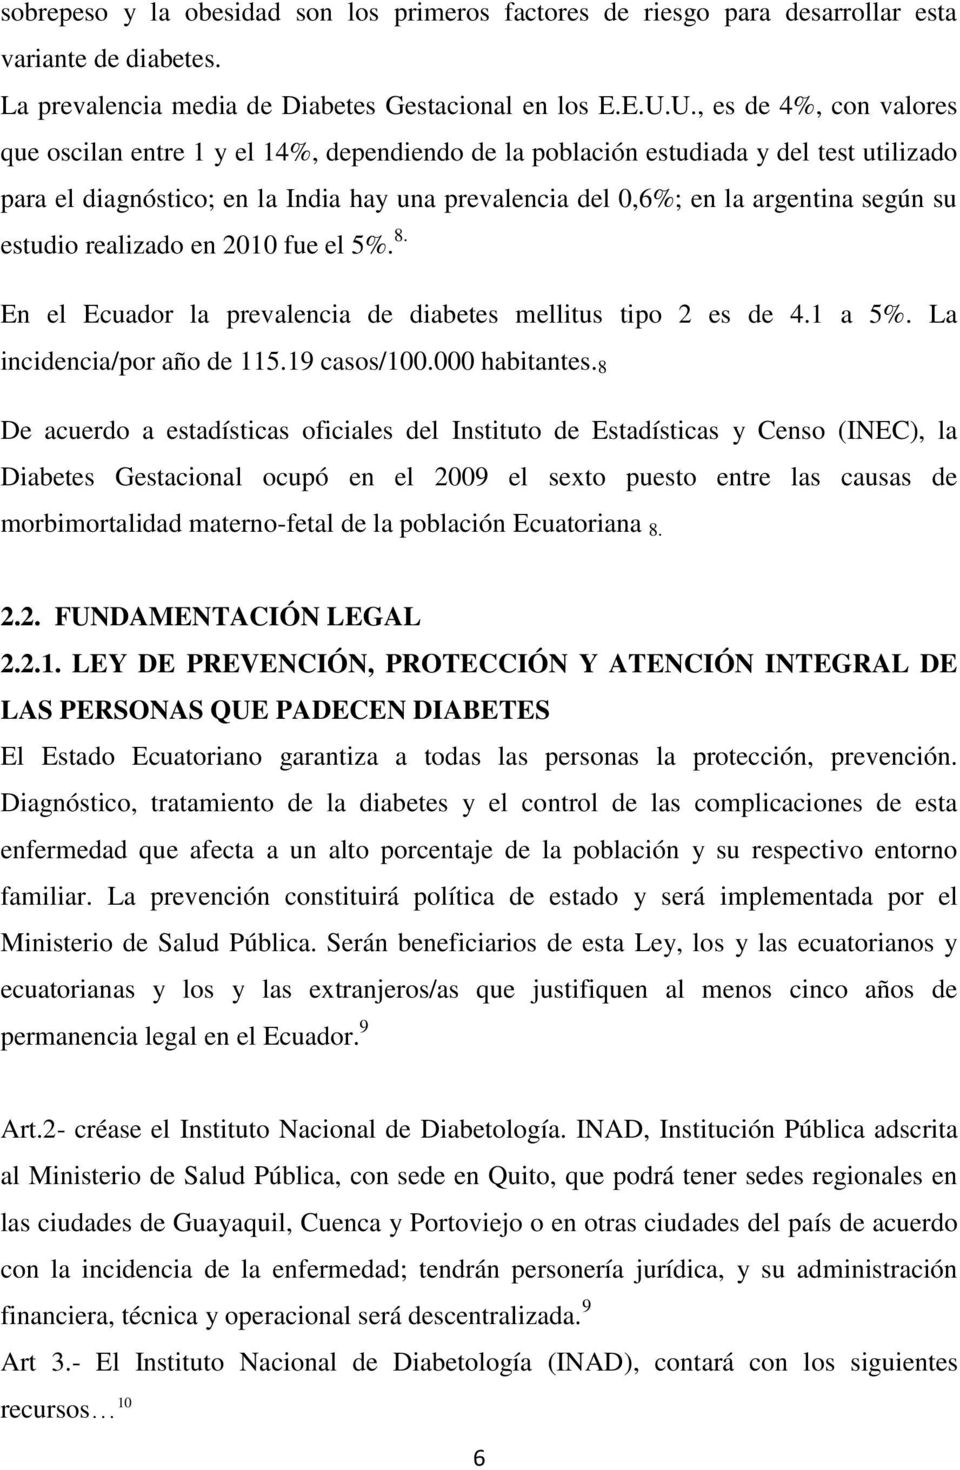 su estudio realizado en 2010 fue el 5%. 8. En el Ecuador la prevalencia de diabetes mellitus tipo 2 es de 4.1 a 5%. La incidencia/por año de 115.19 casos/100.000 habitantes.